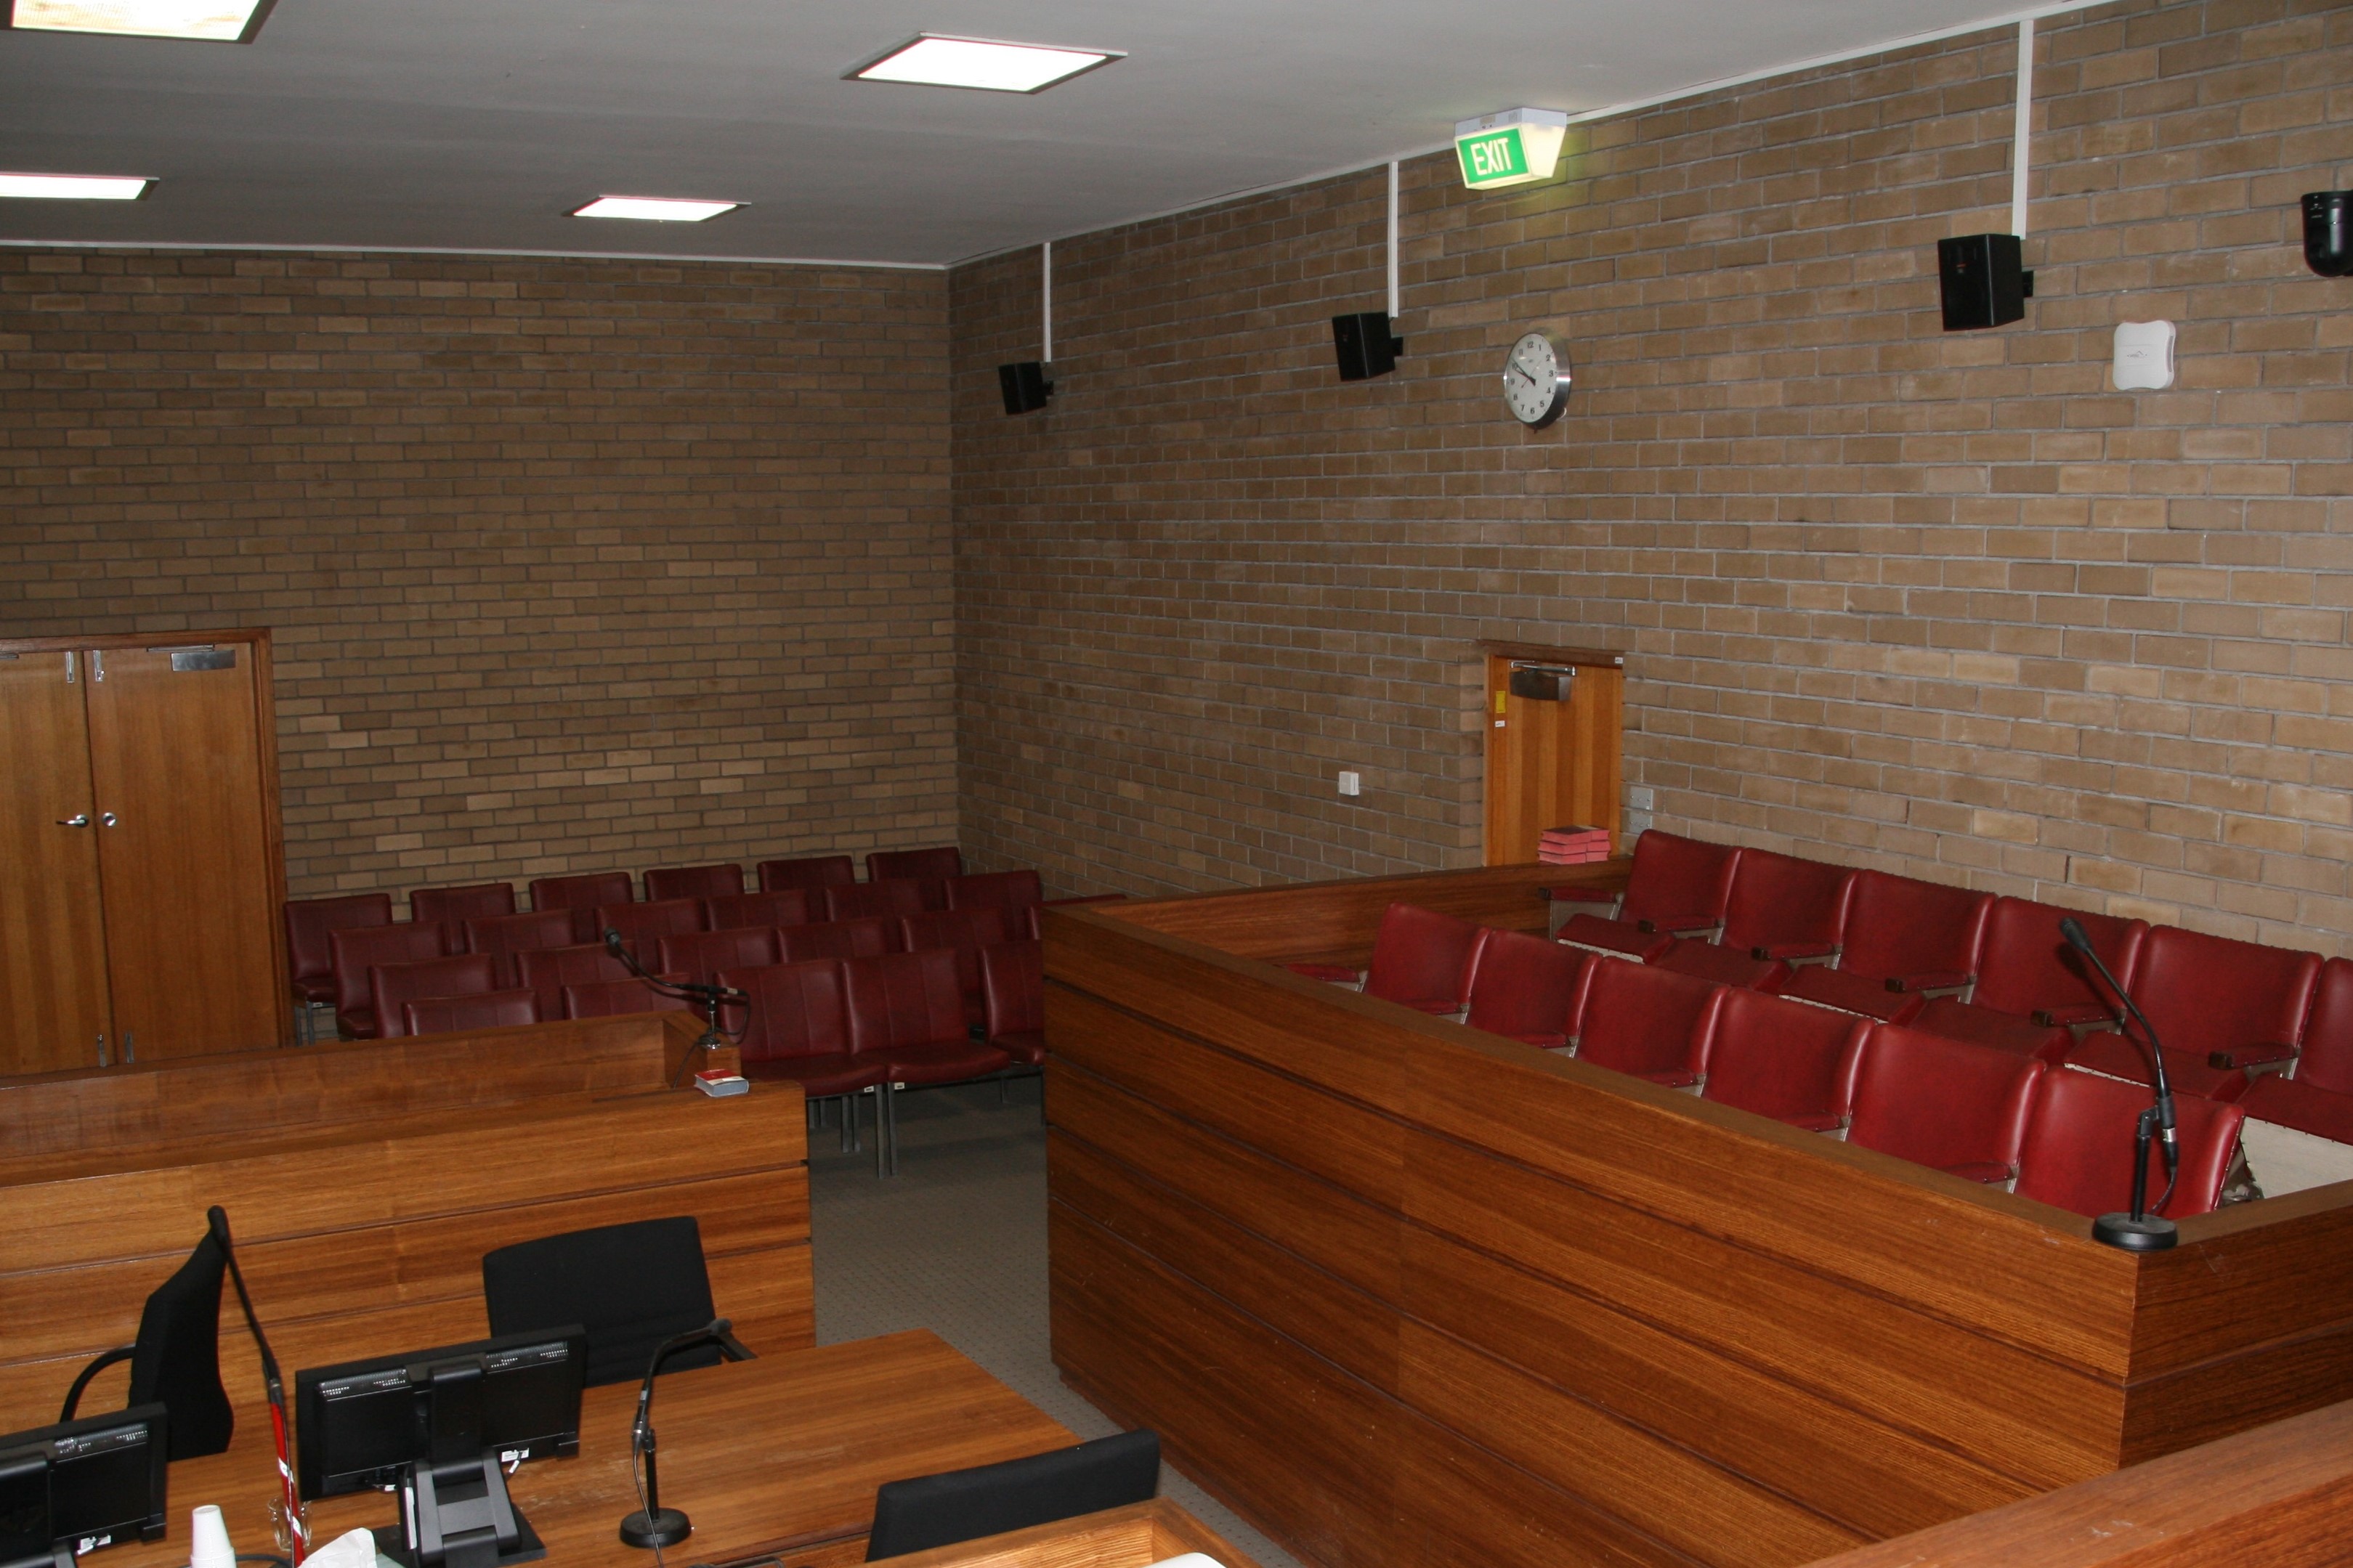 Courtroom inside Horsham Magistrates' Court